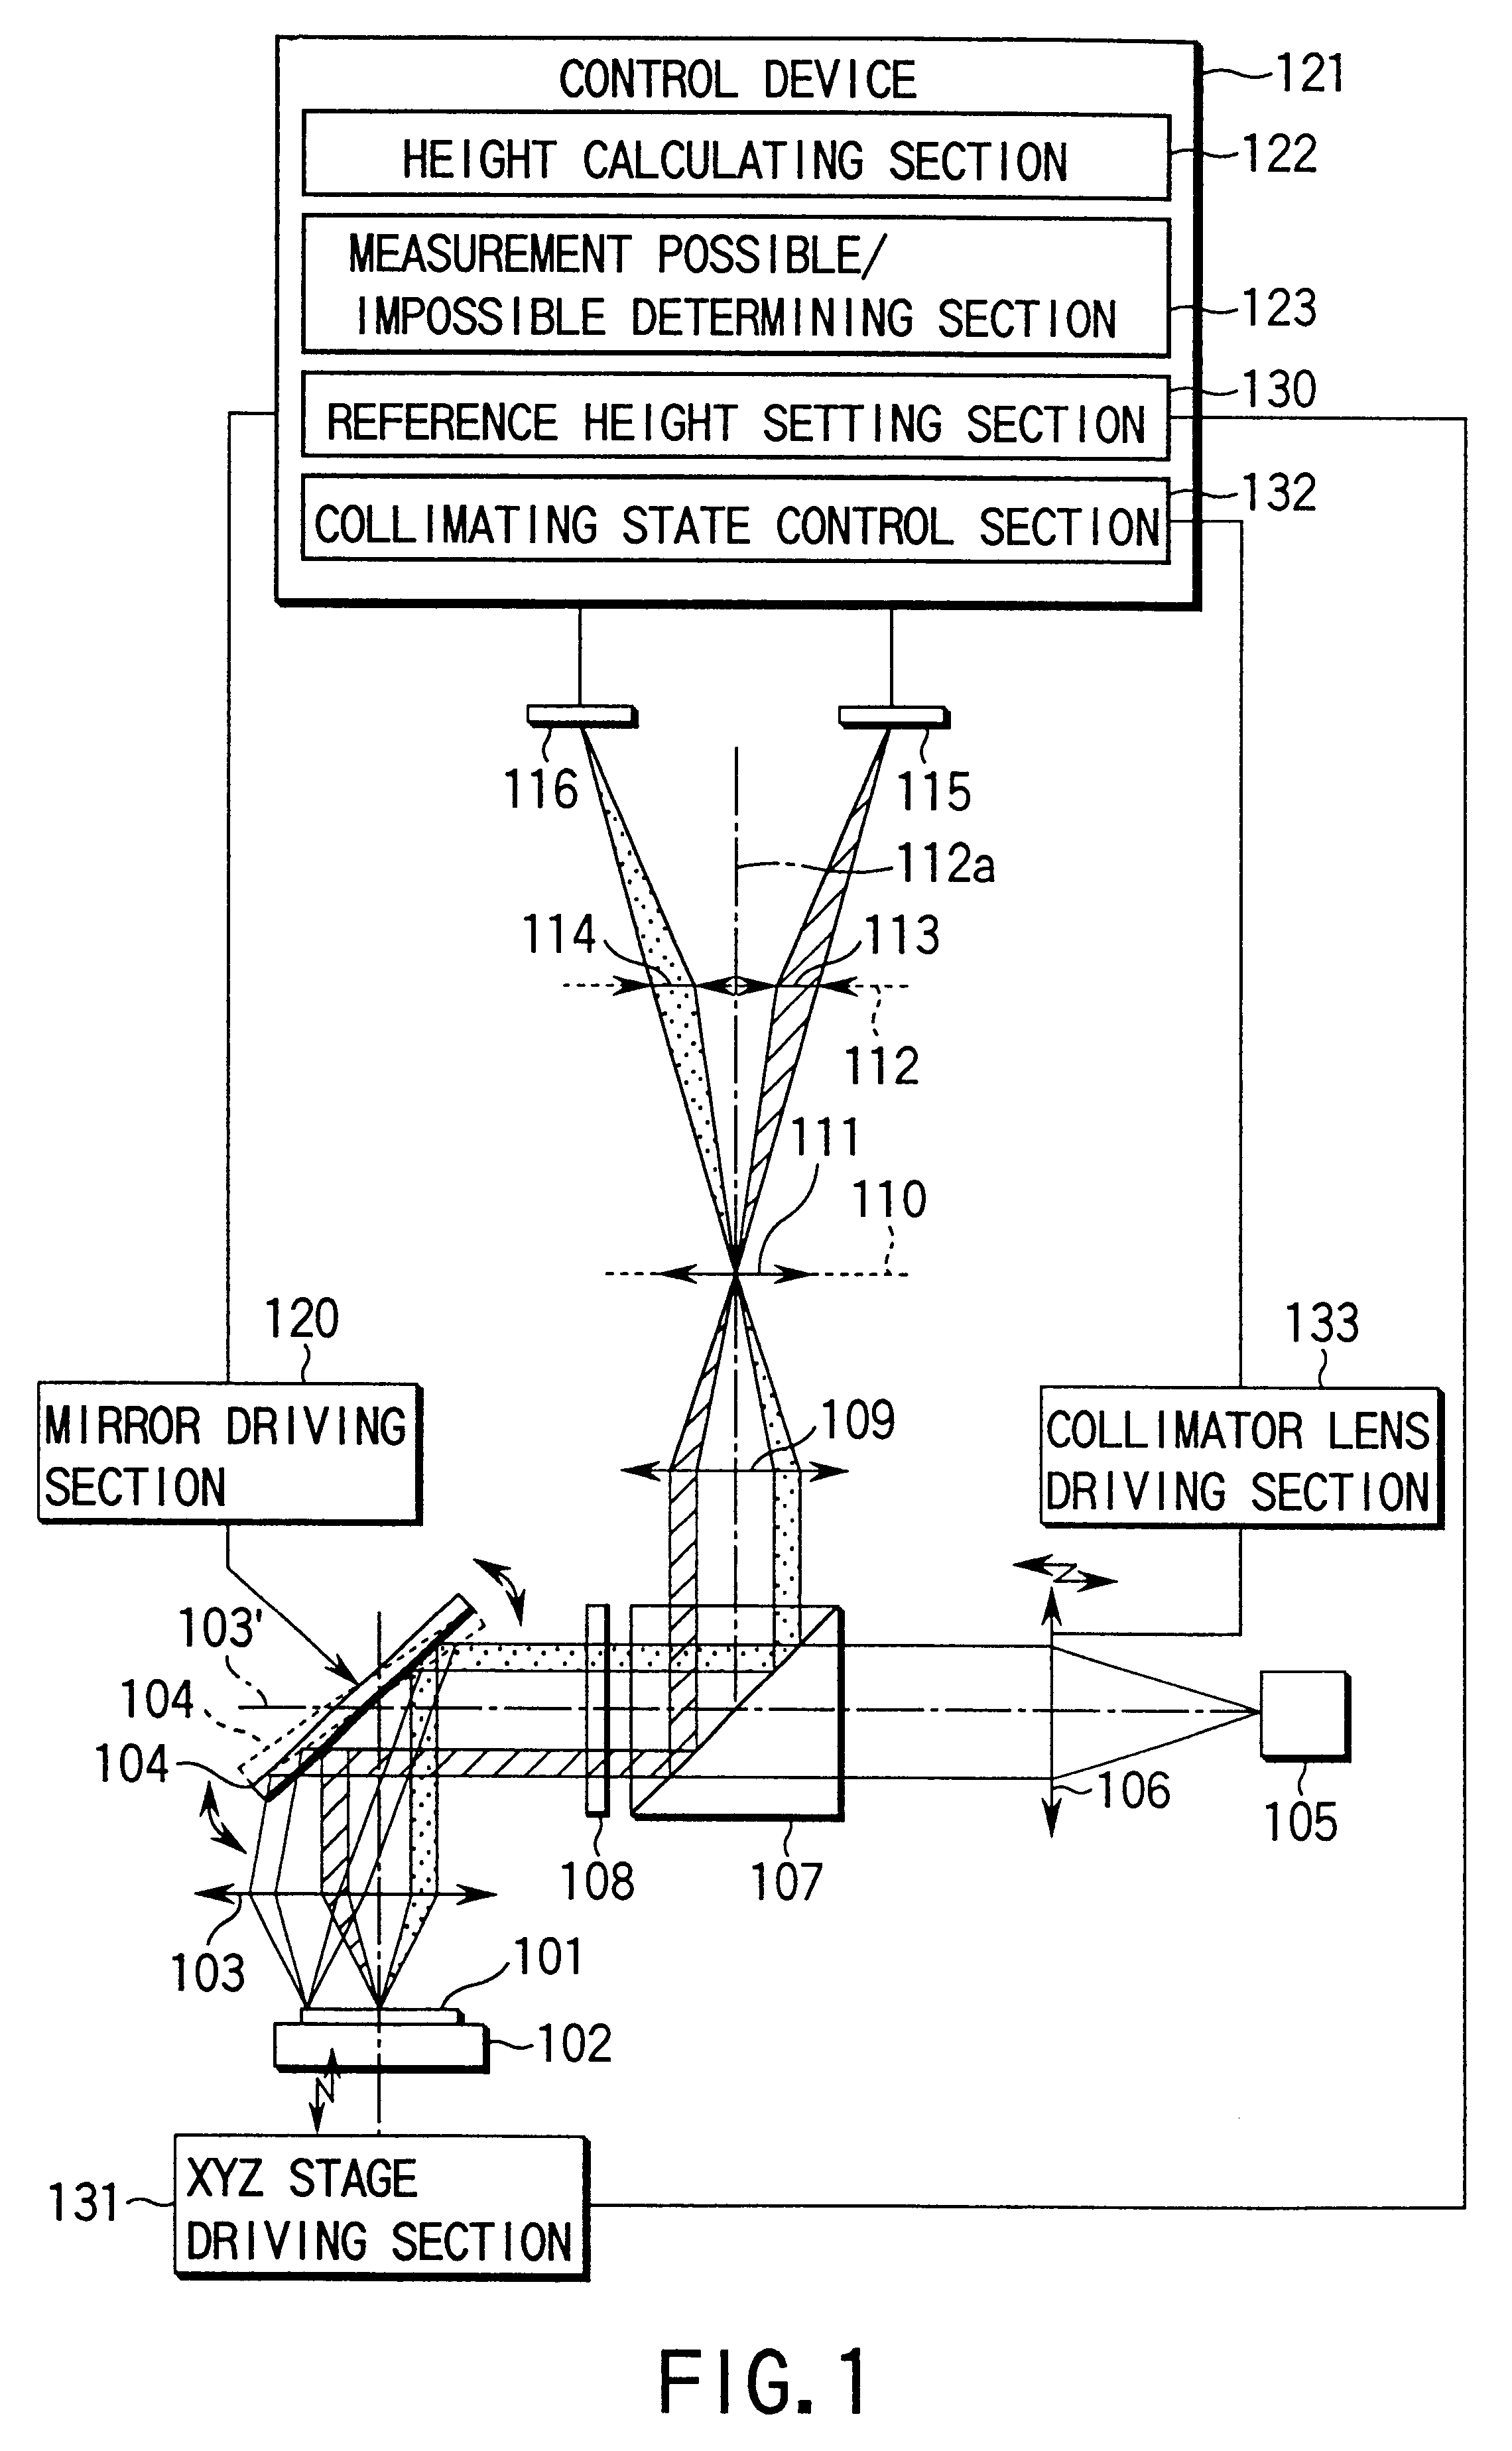 Height measuring apparatus